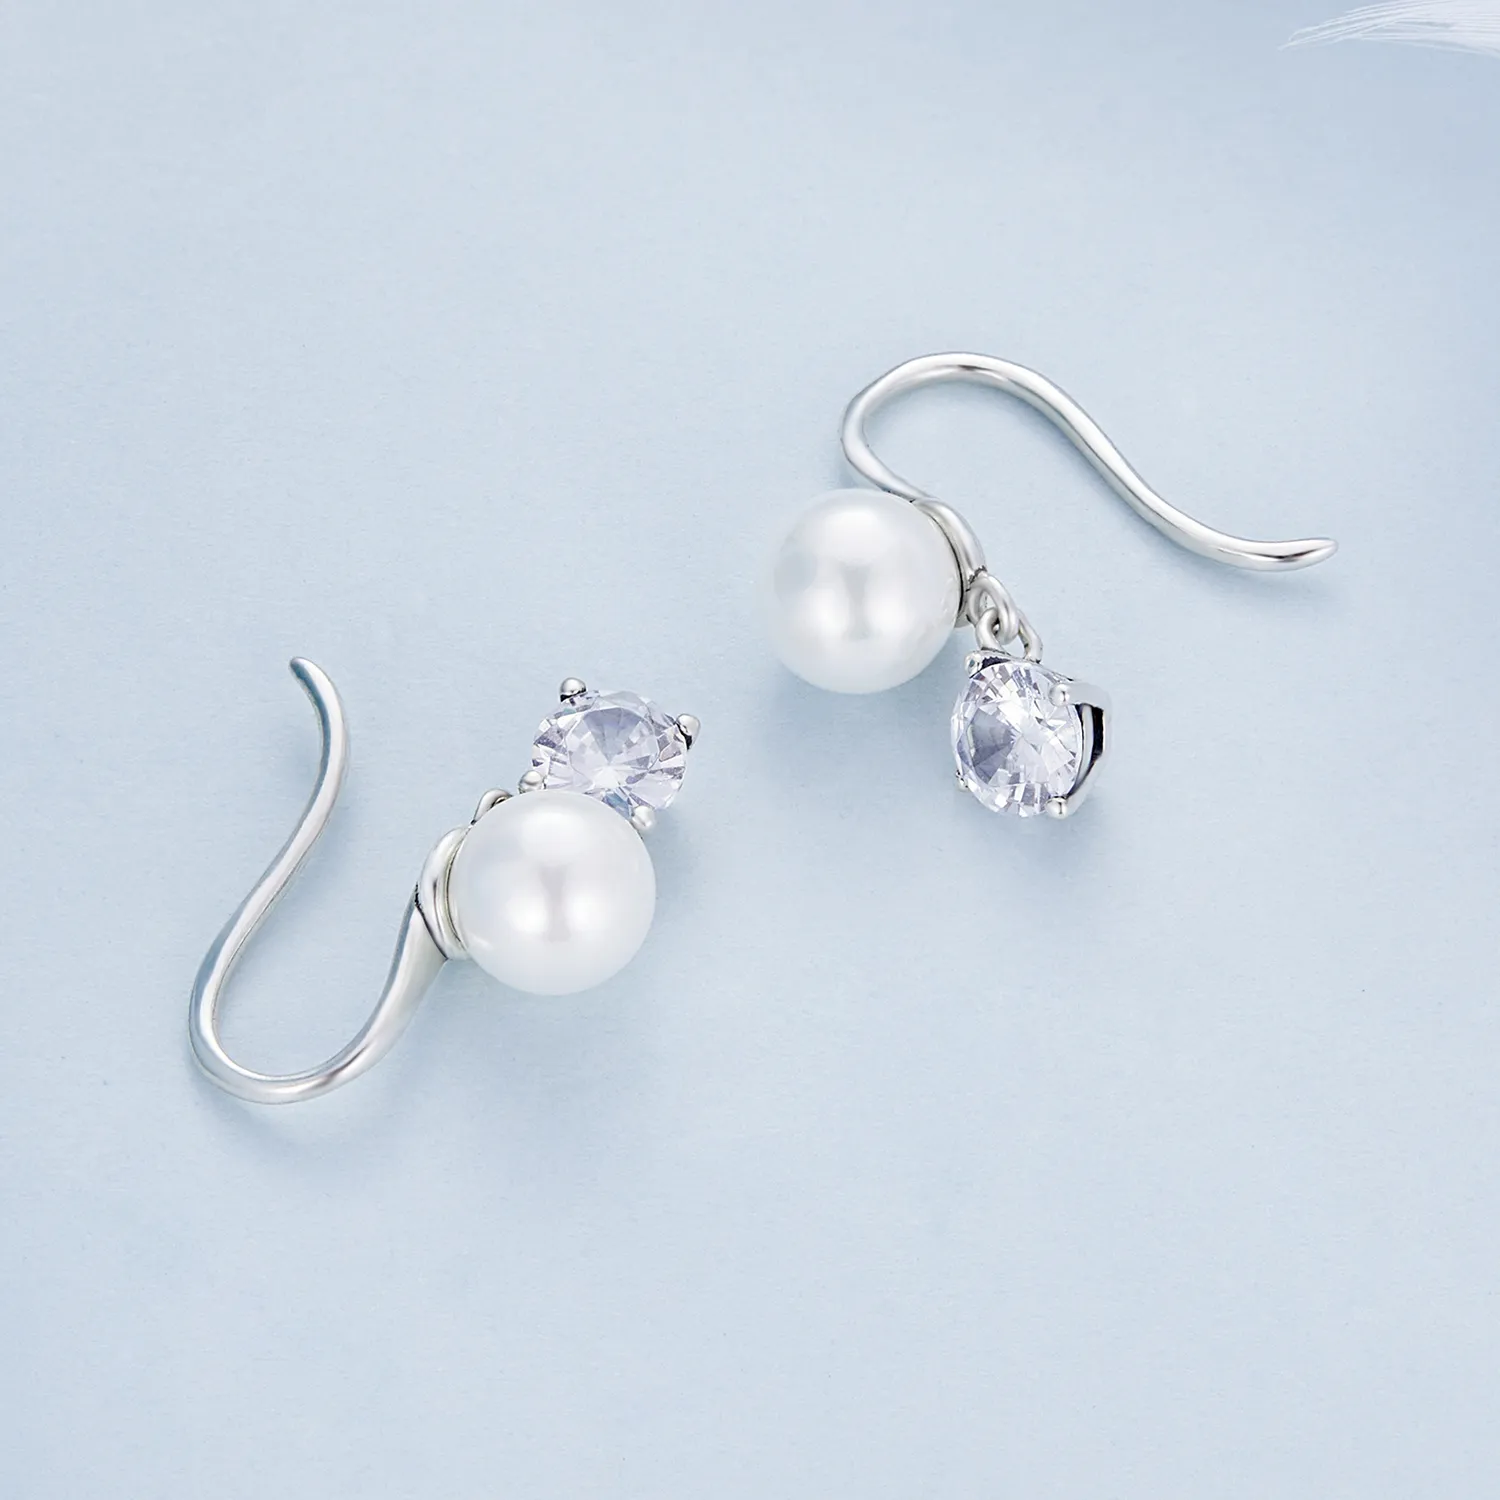 Pandora Style Pearl Stud Earrings - BSE684